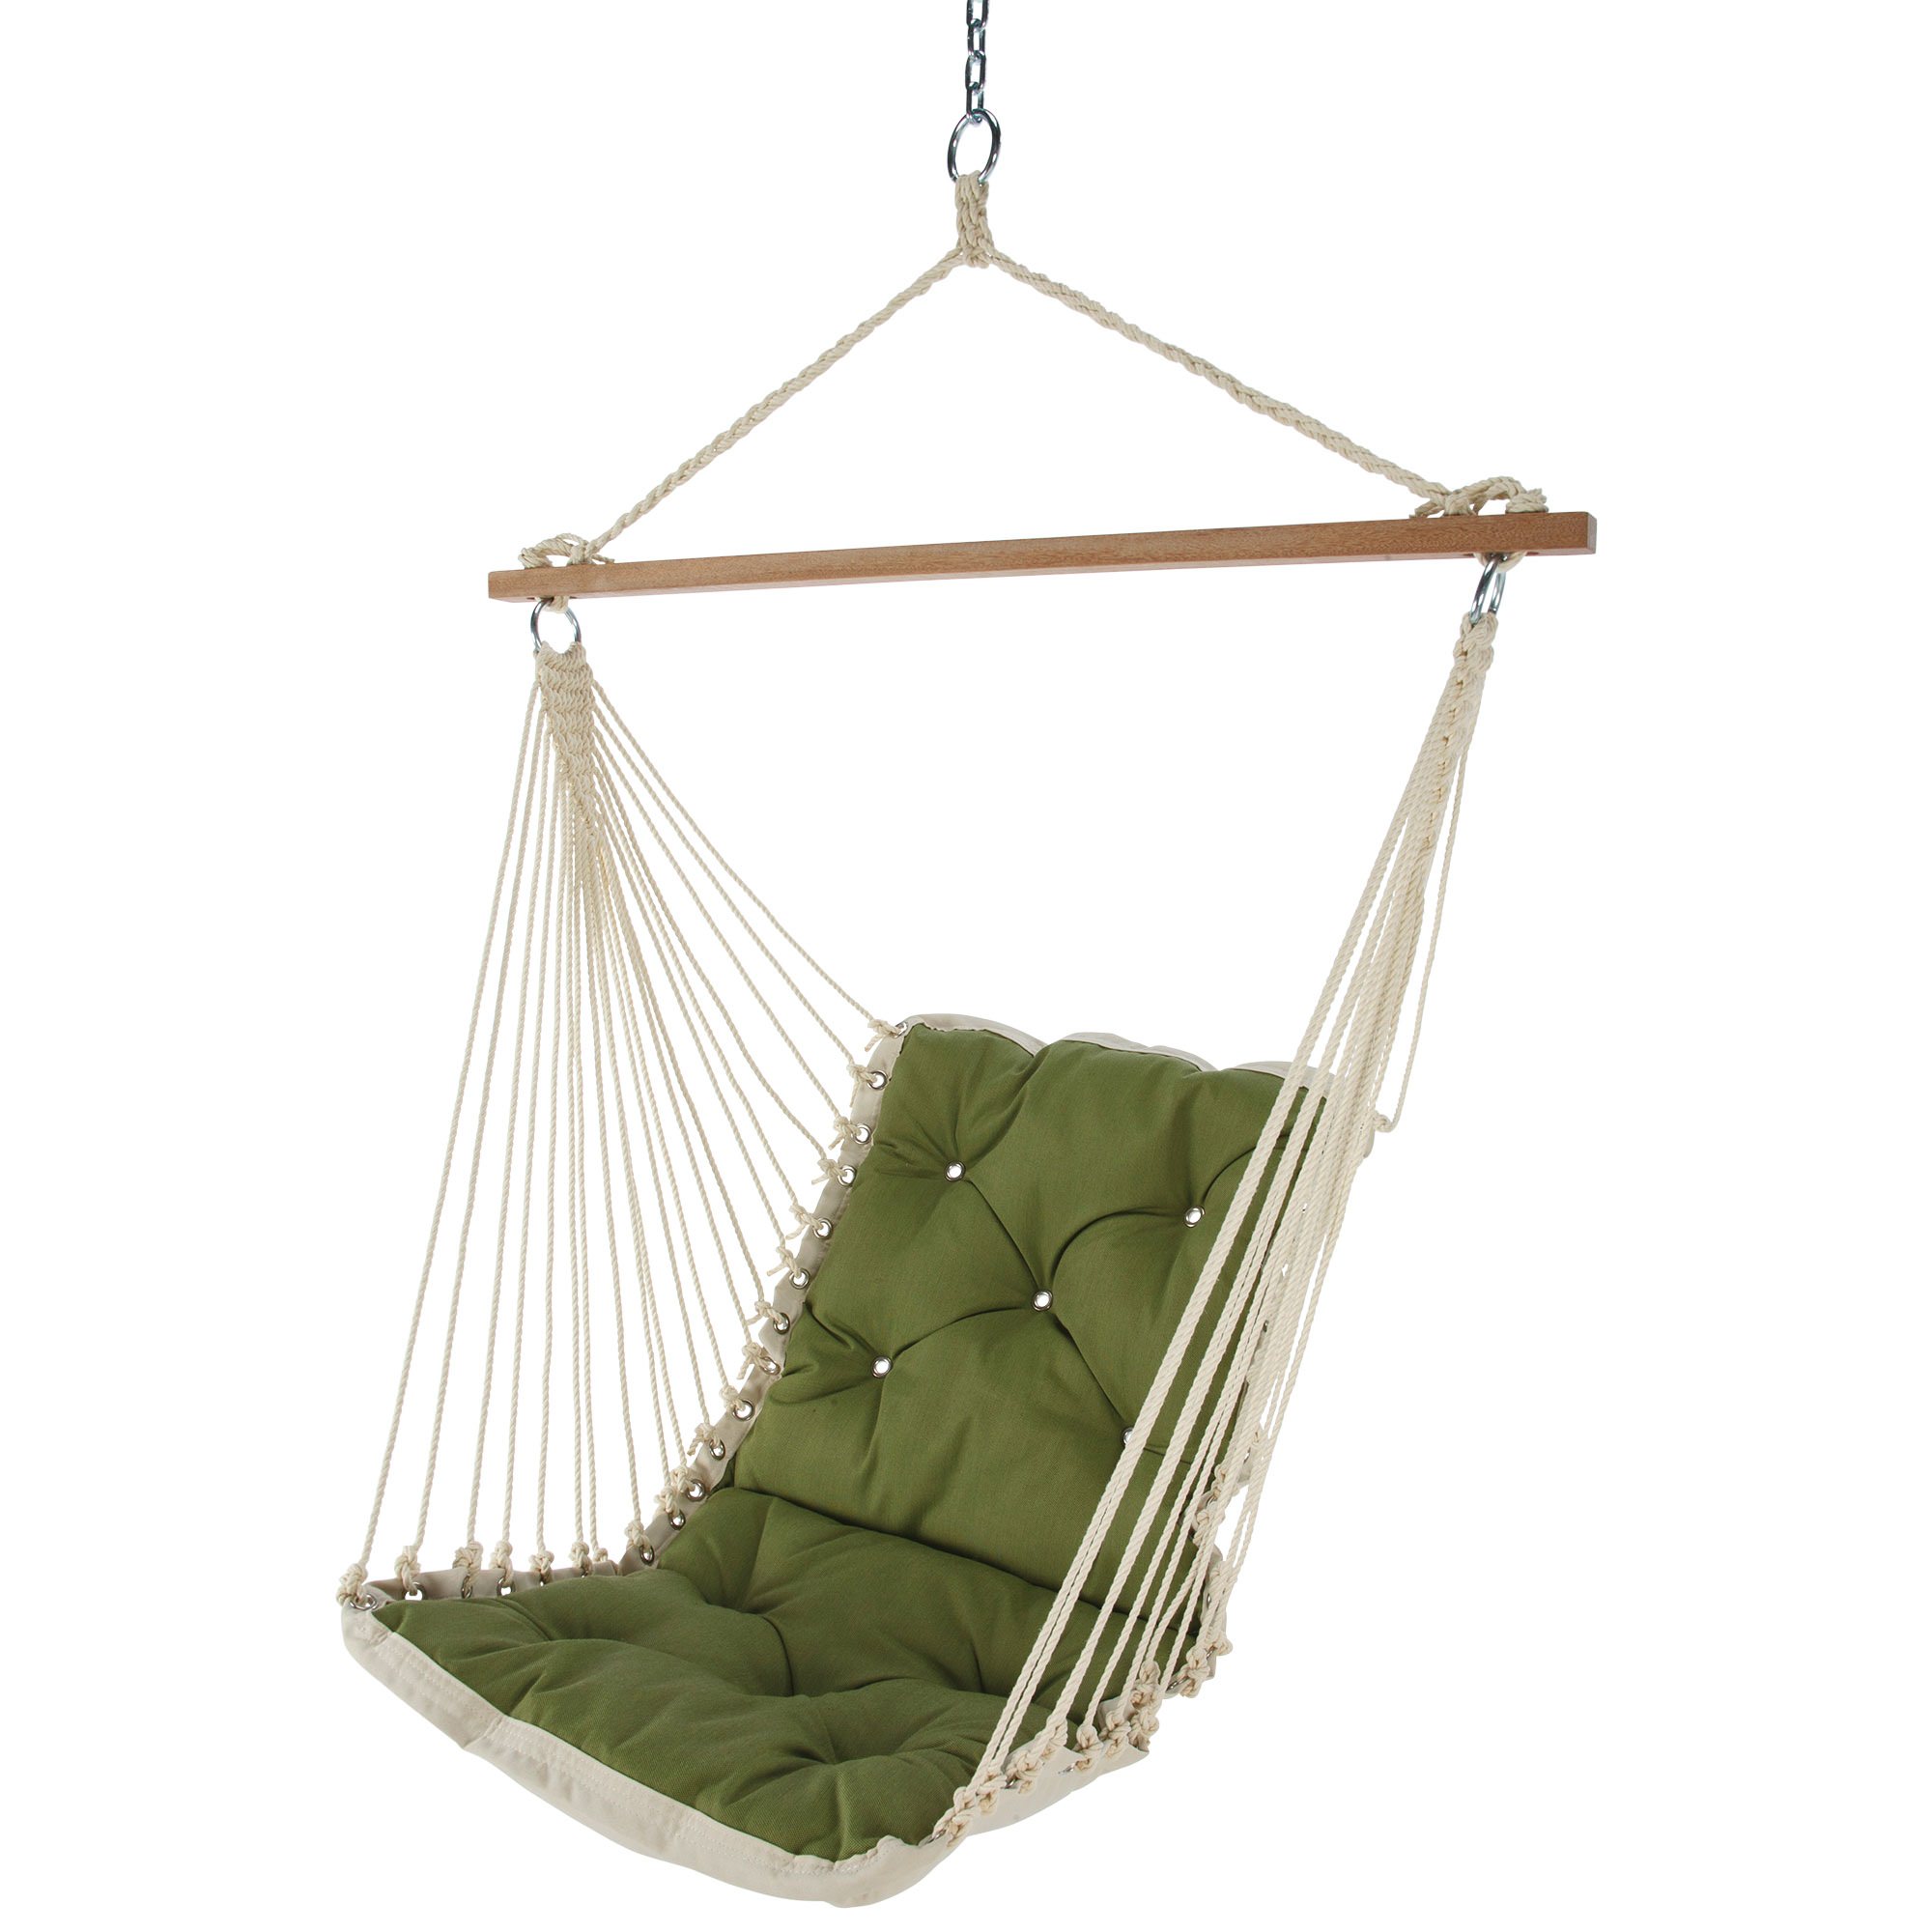 Single hammock swing